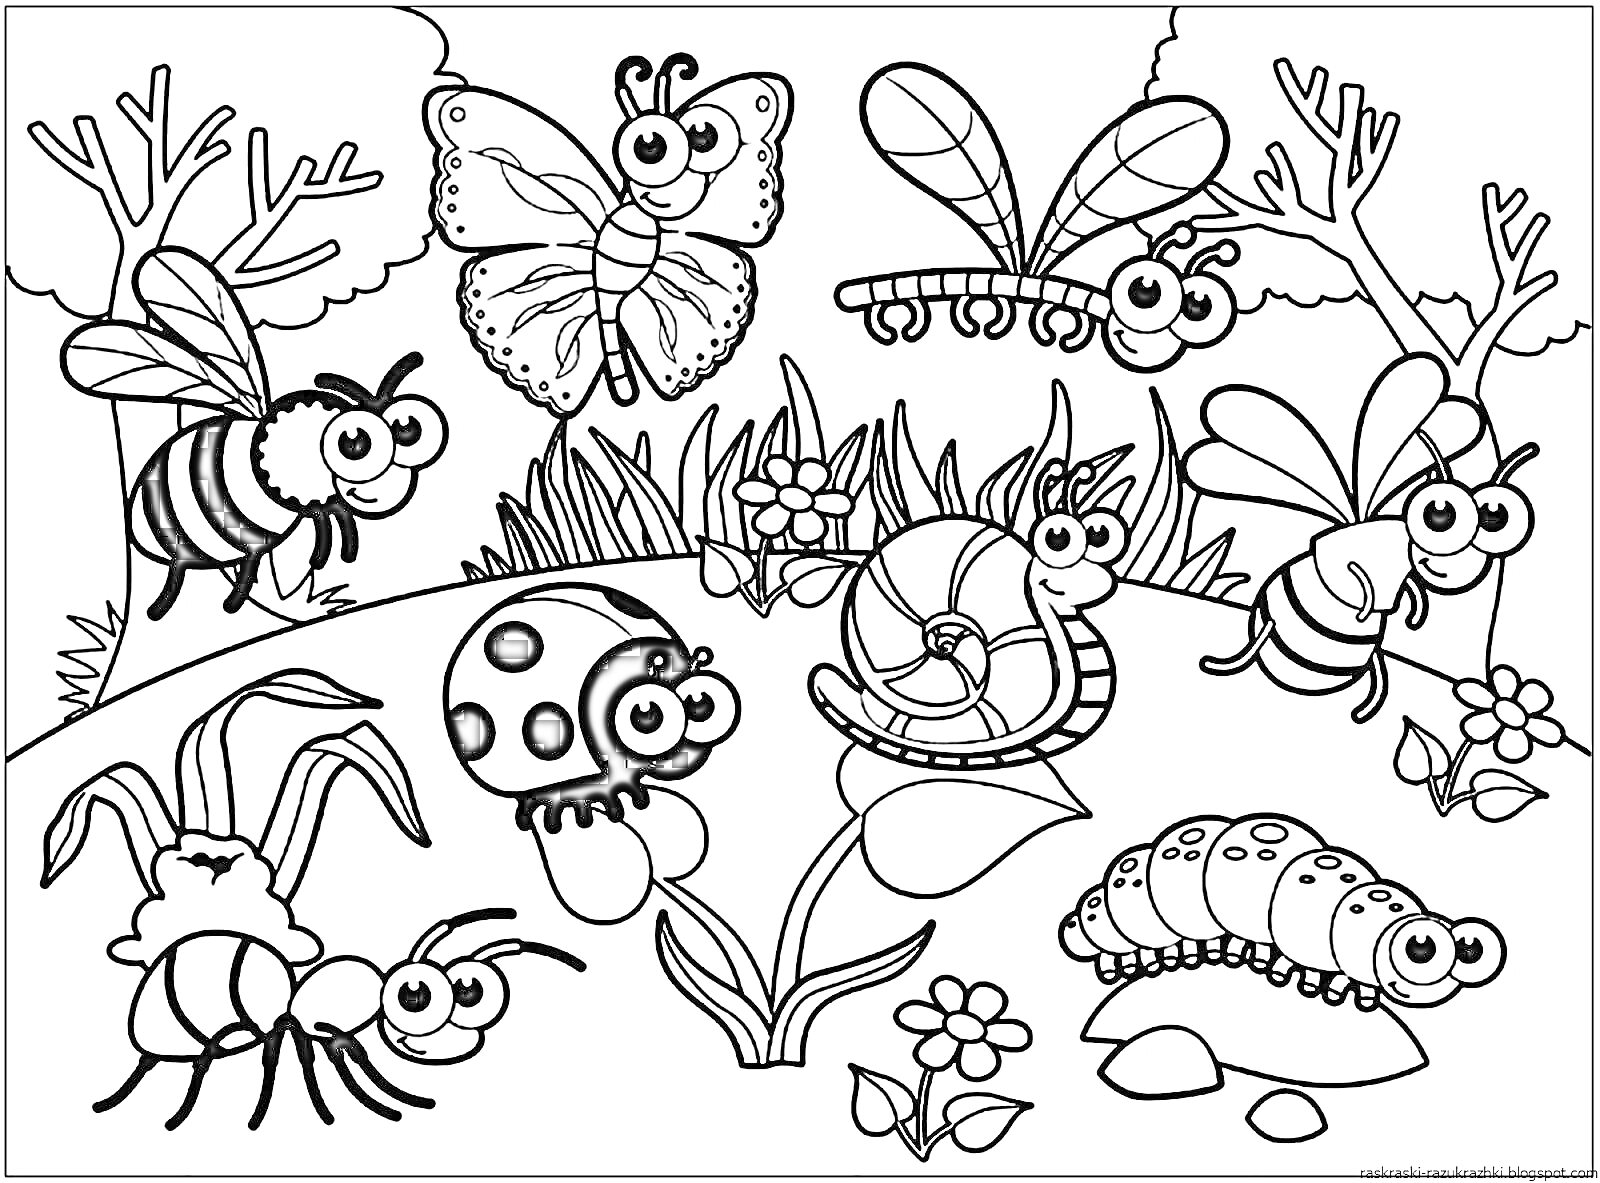 Раскраска Насекомые на лугу. Пчела, бабочка, стрекоза, божья коровка, улитка, мушка, паук, гусеница, цветы, кусты, трава, камни